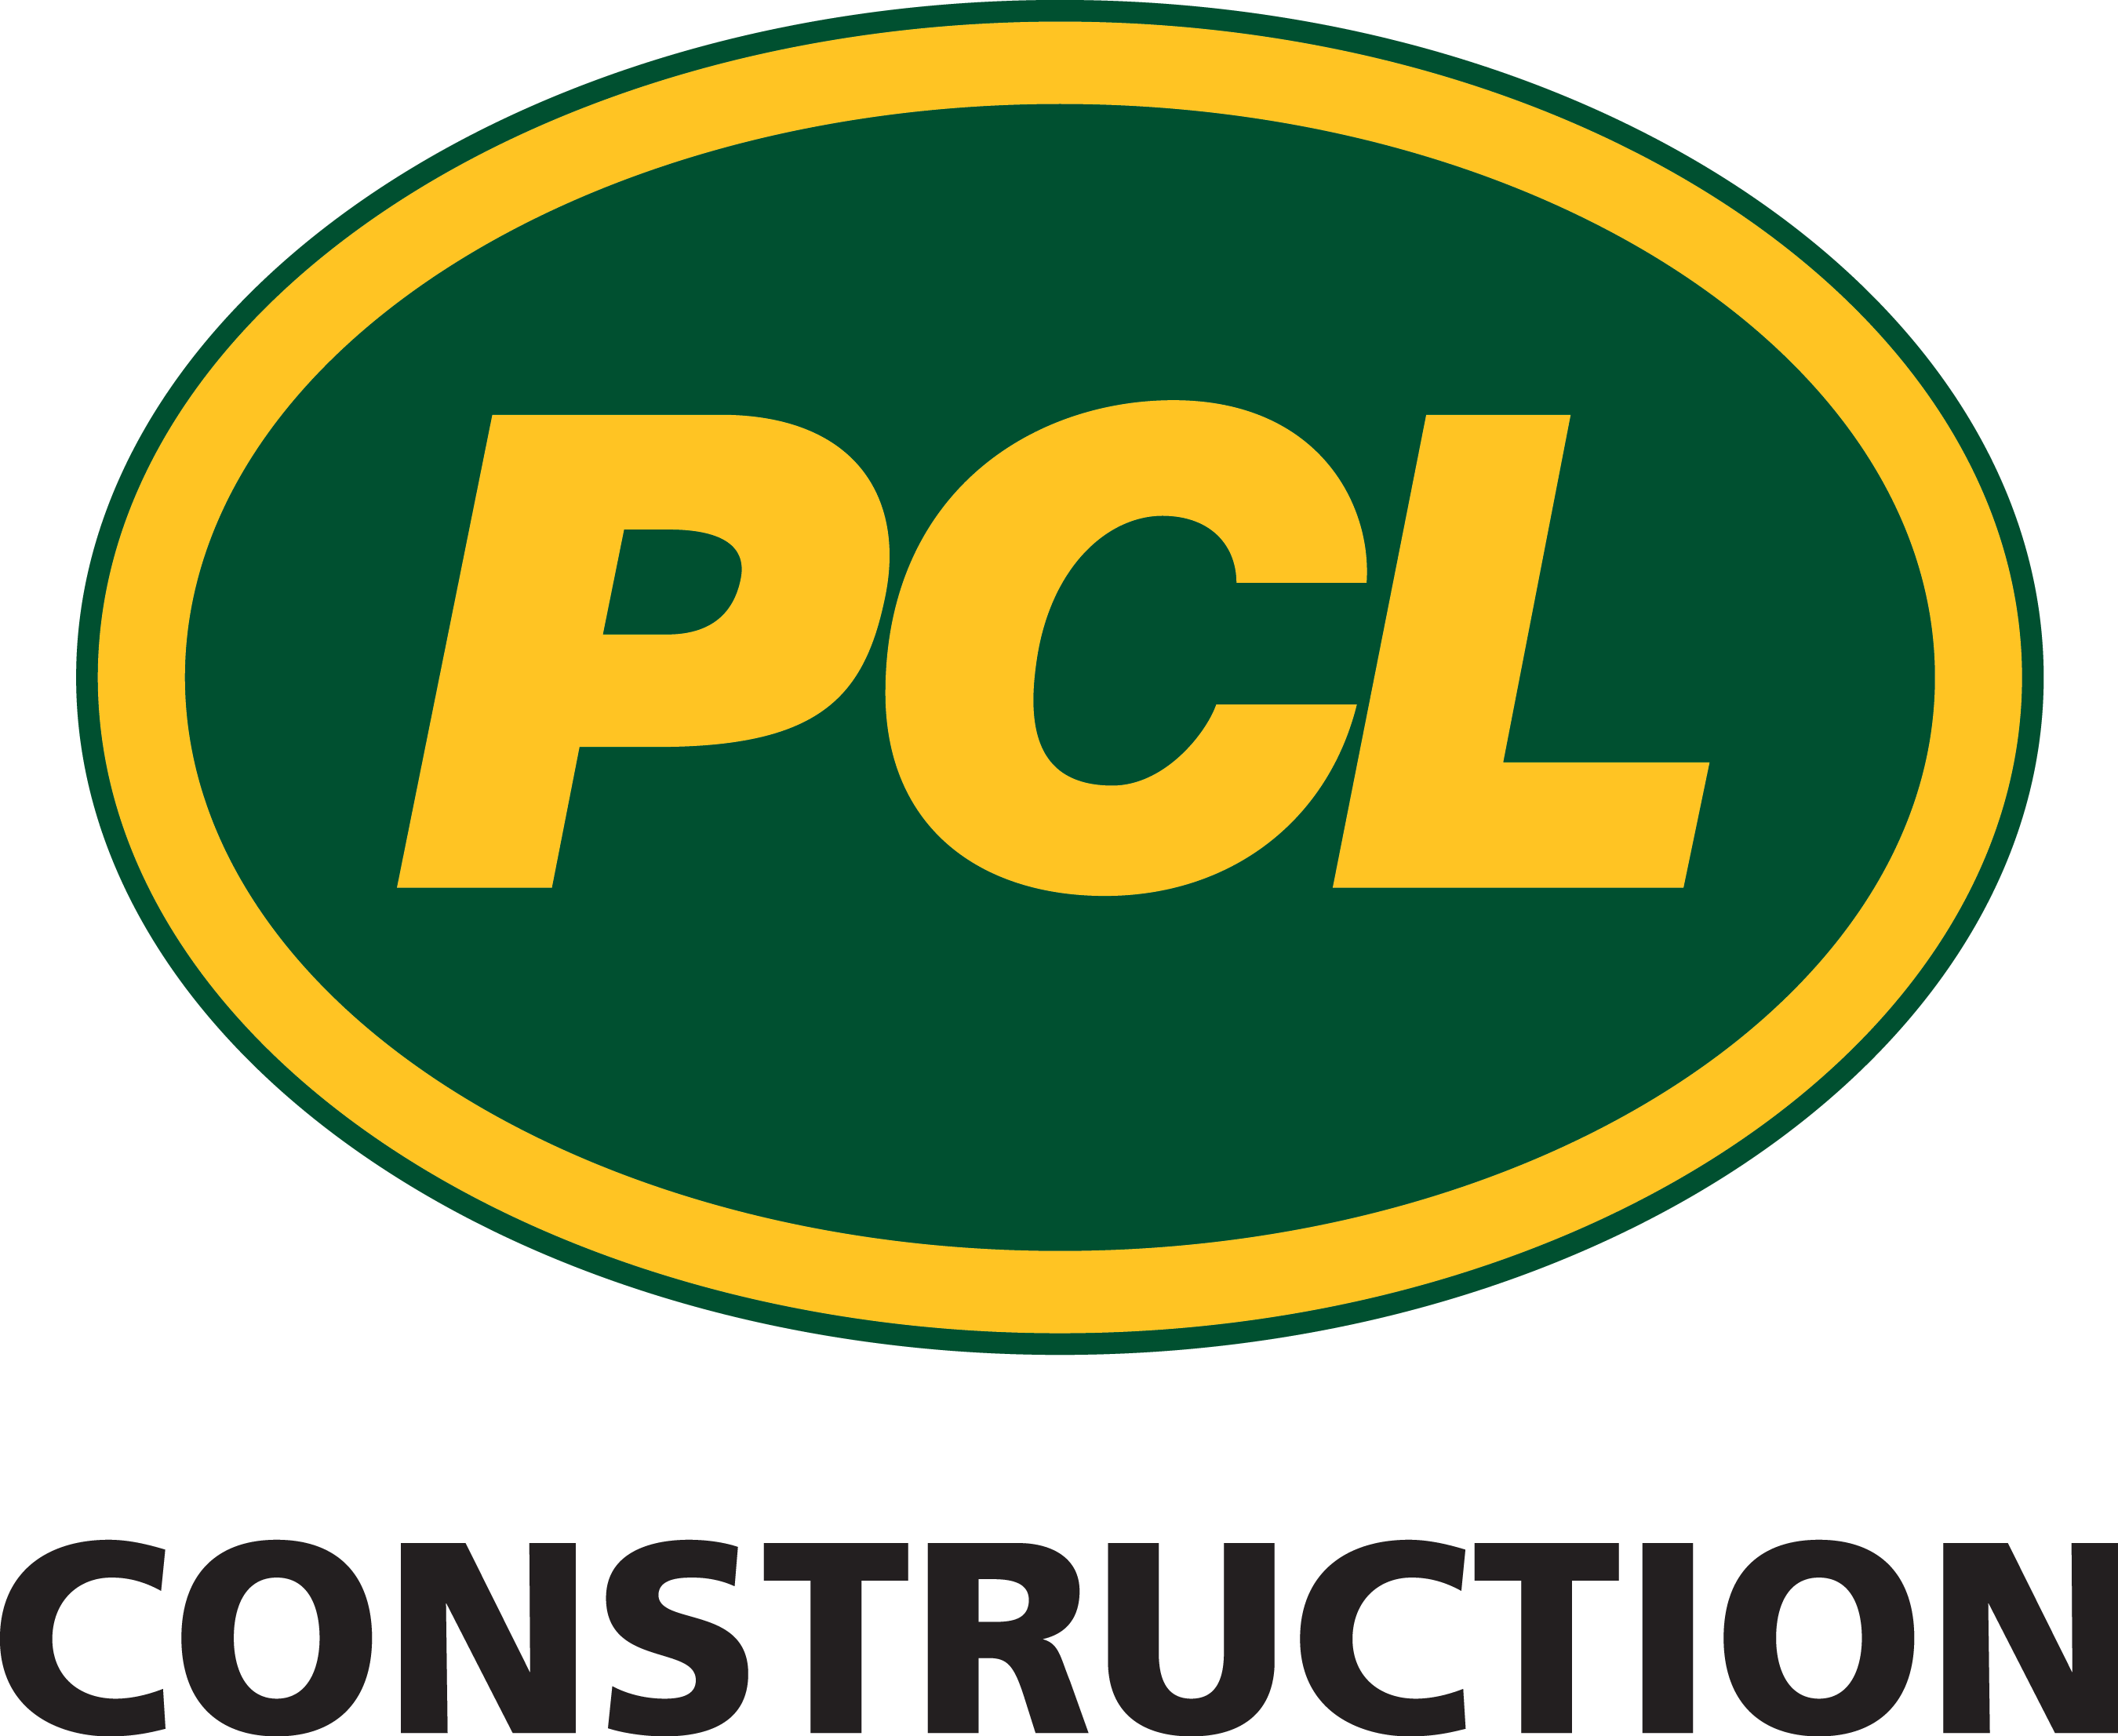 PCL Construction Services, Inc. logo